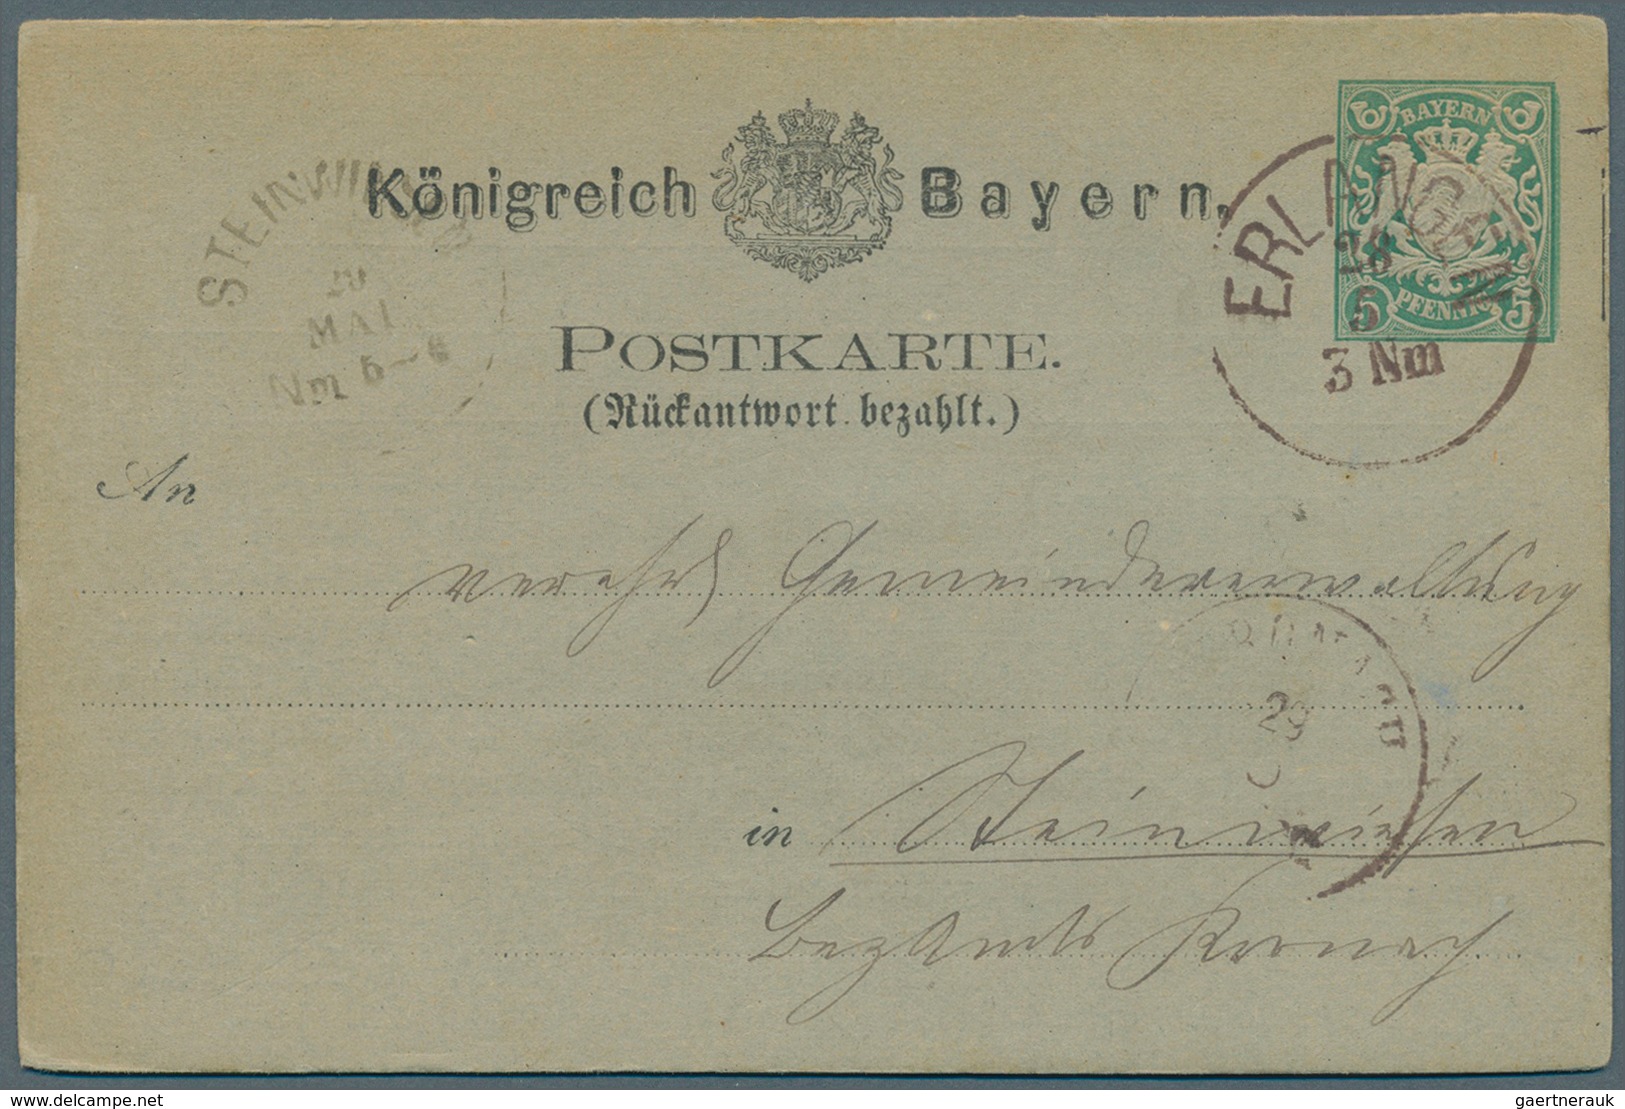 Bayern - Ganzsachen: 1873/1903. Nette Sammlung von 35 gebrauchten Postkarten. Dabei sind viele gute